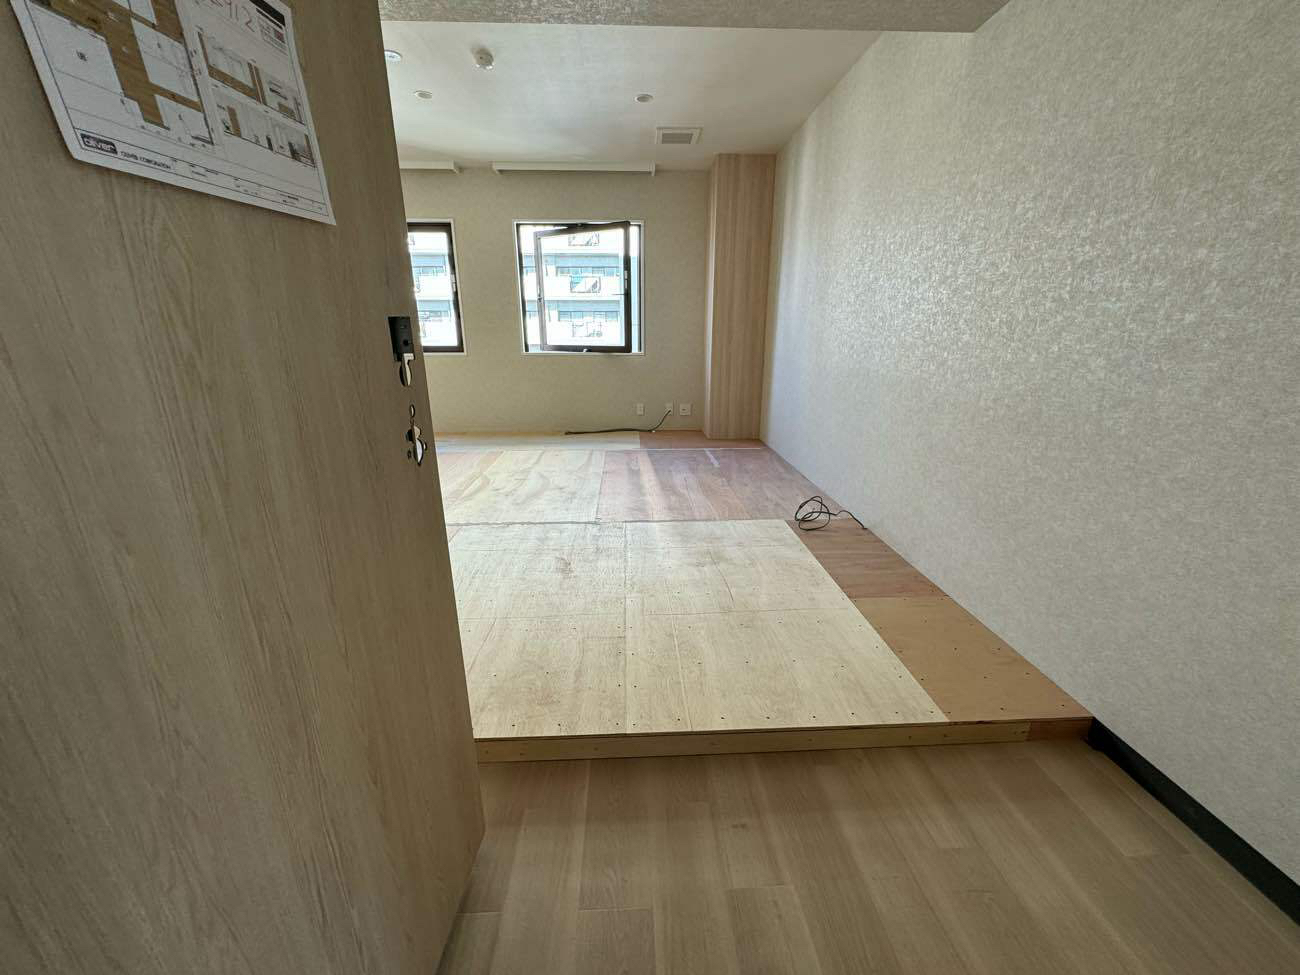 東京都江戸川区にて店舗の置床工事を行いました。フリーフロアCP